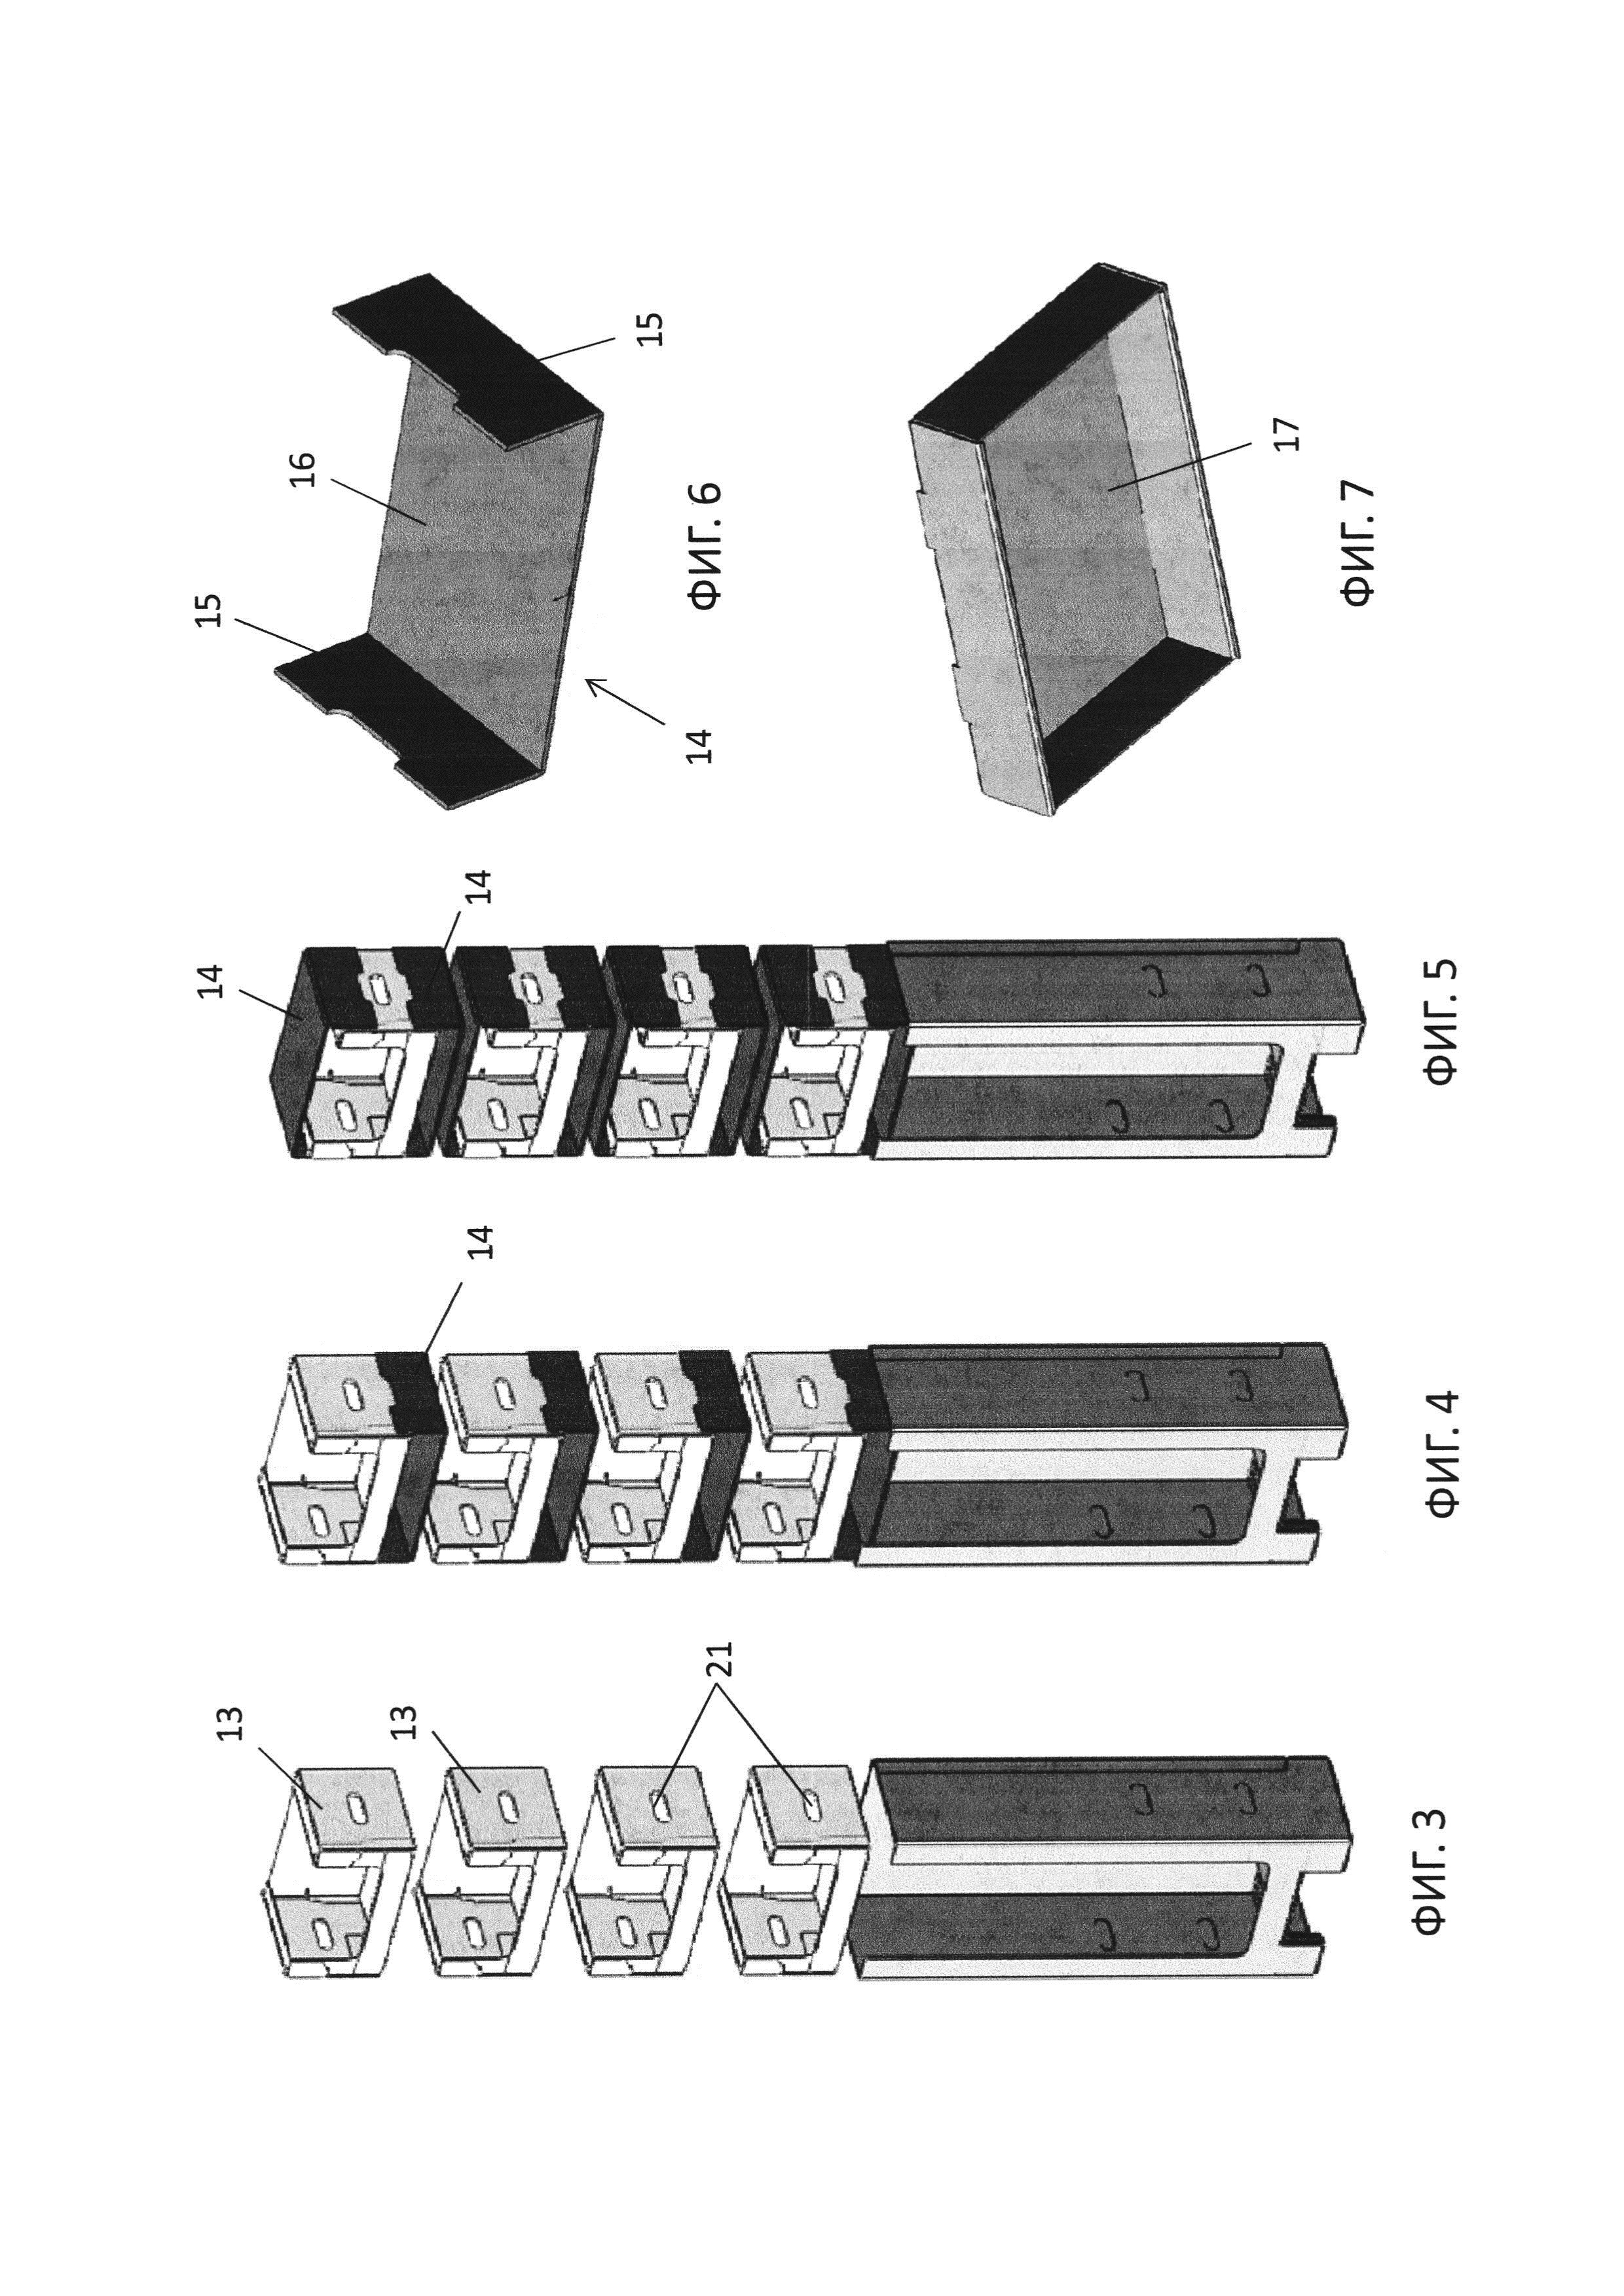 Транспортный контейнер с функцией дисплея (варианты)